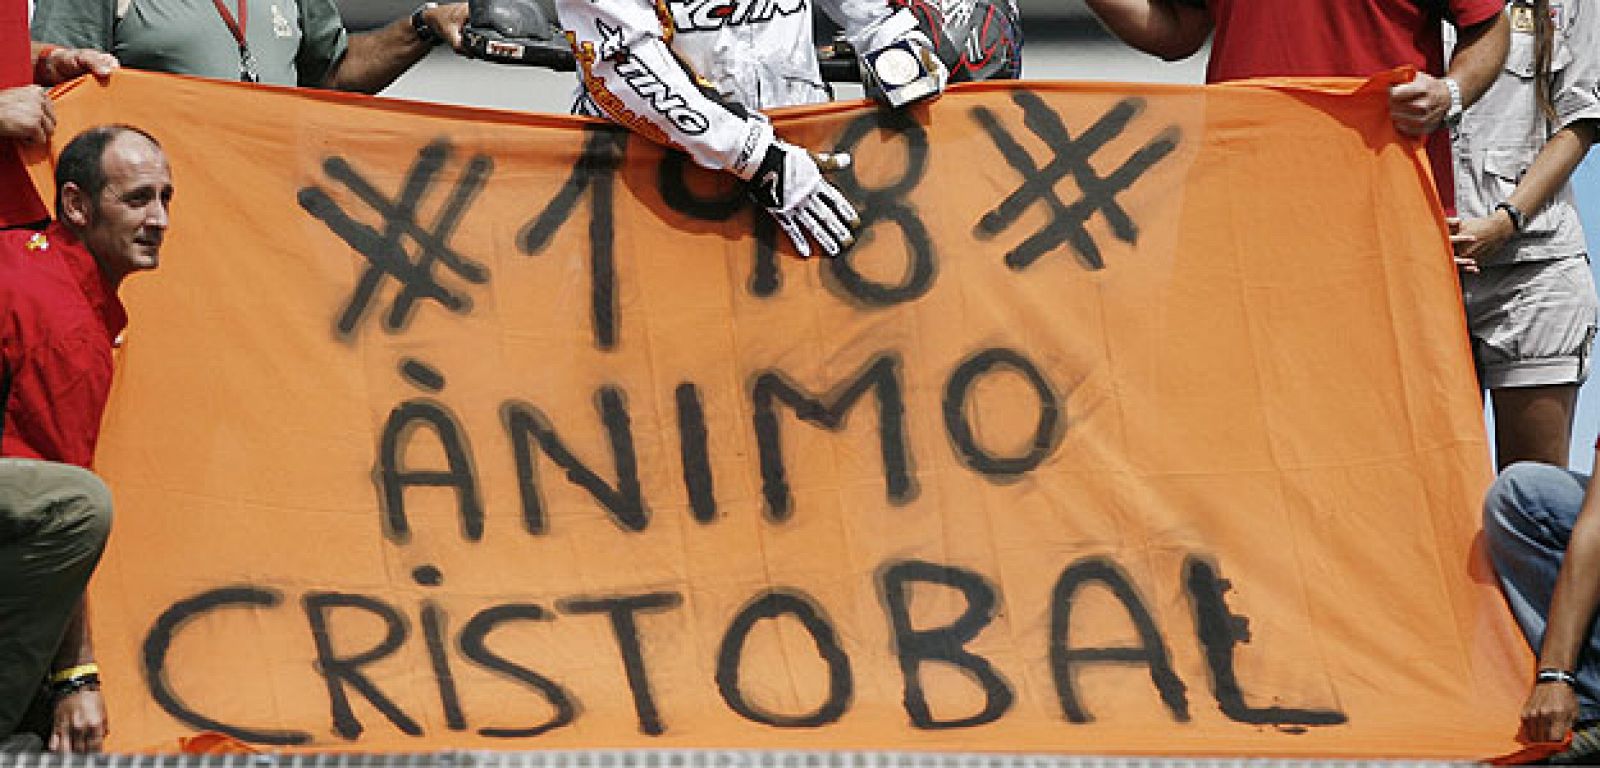 Una pancarta de apoyo al accidentado Cristóbal Guerrero.